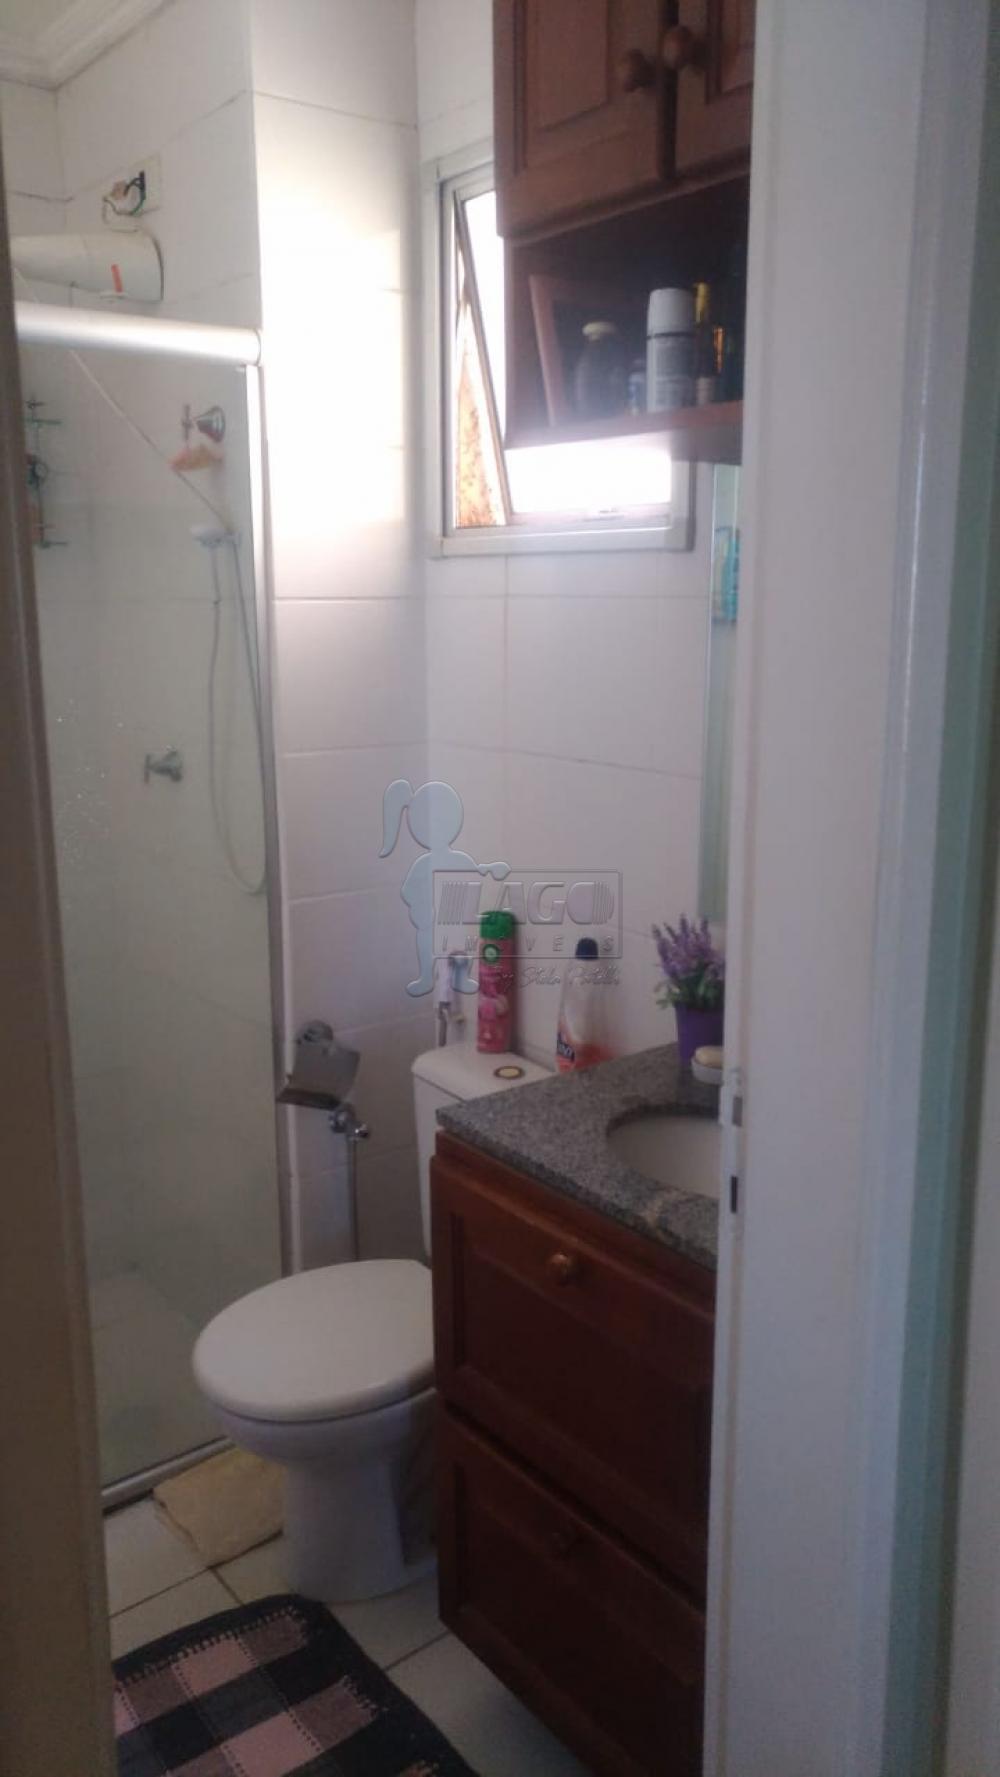 Comprar Apartamentos / Padrão em Ribeirão Preto R$ 195.000,00 - Foto 3